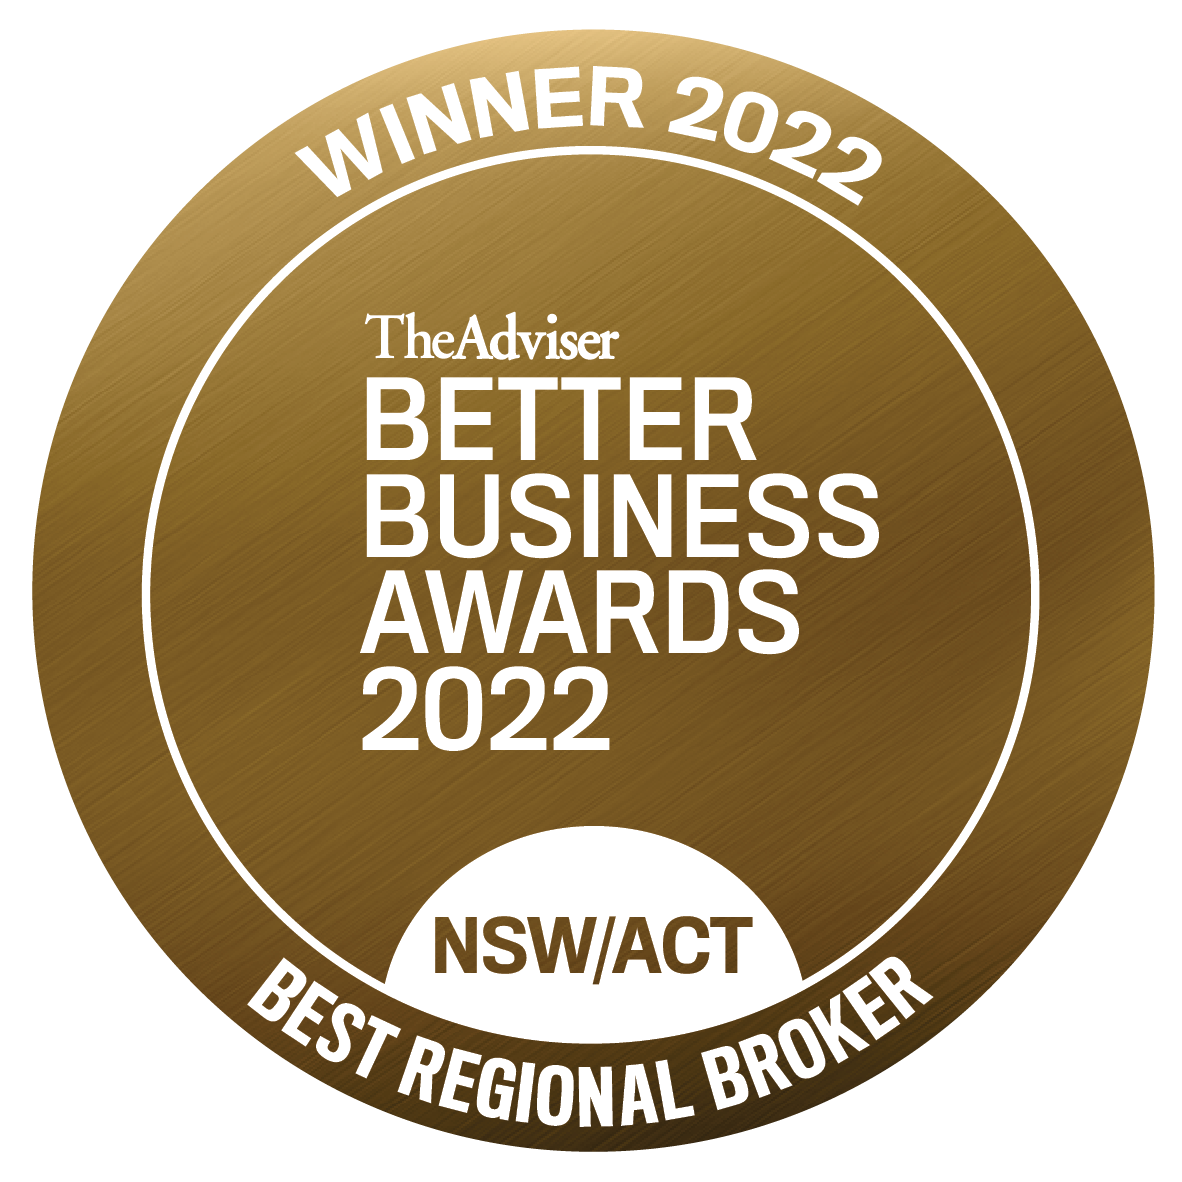 Winner seal__NSW_Best Regional Broker